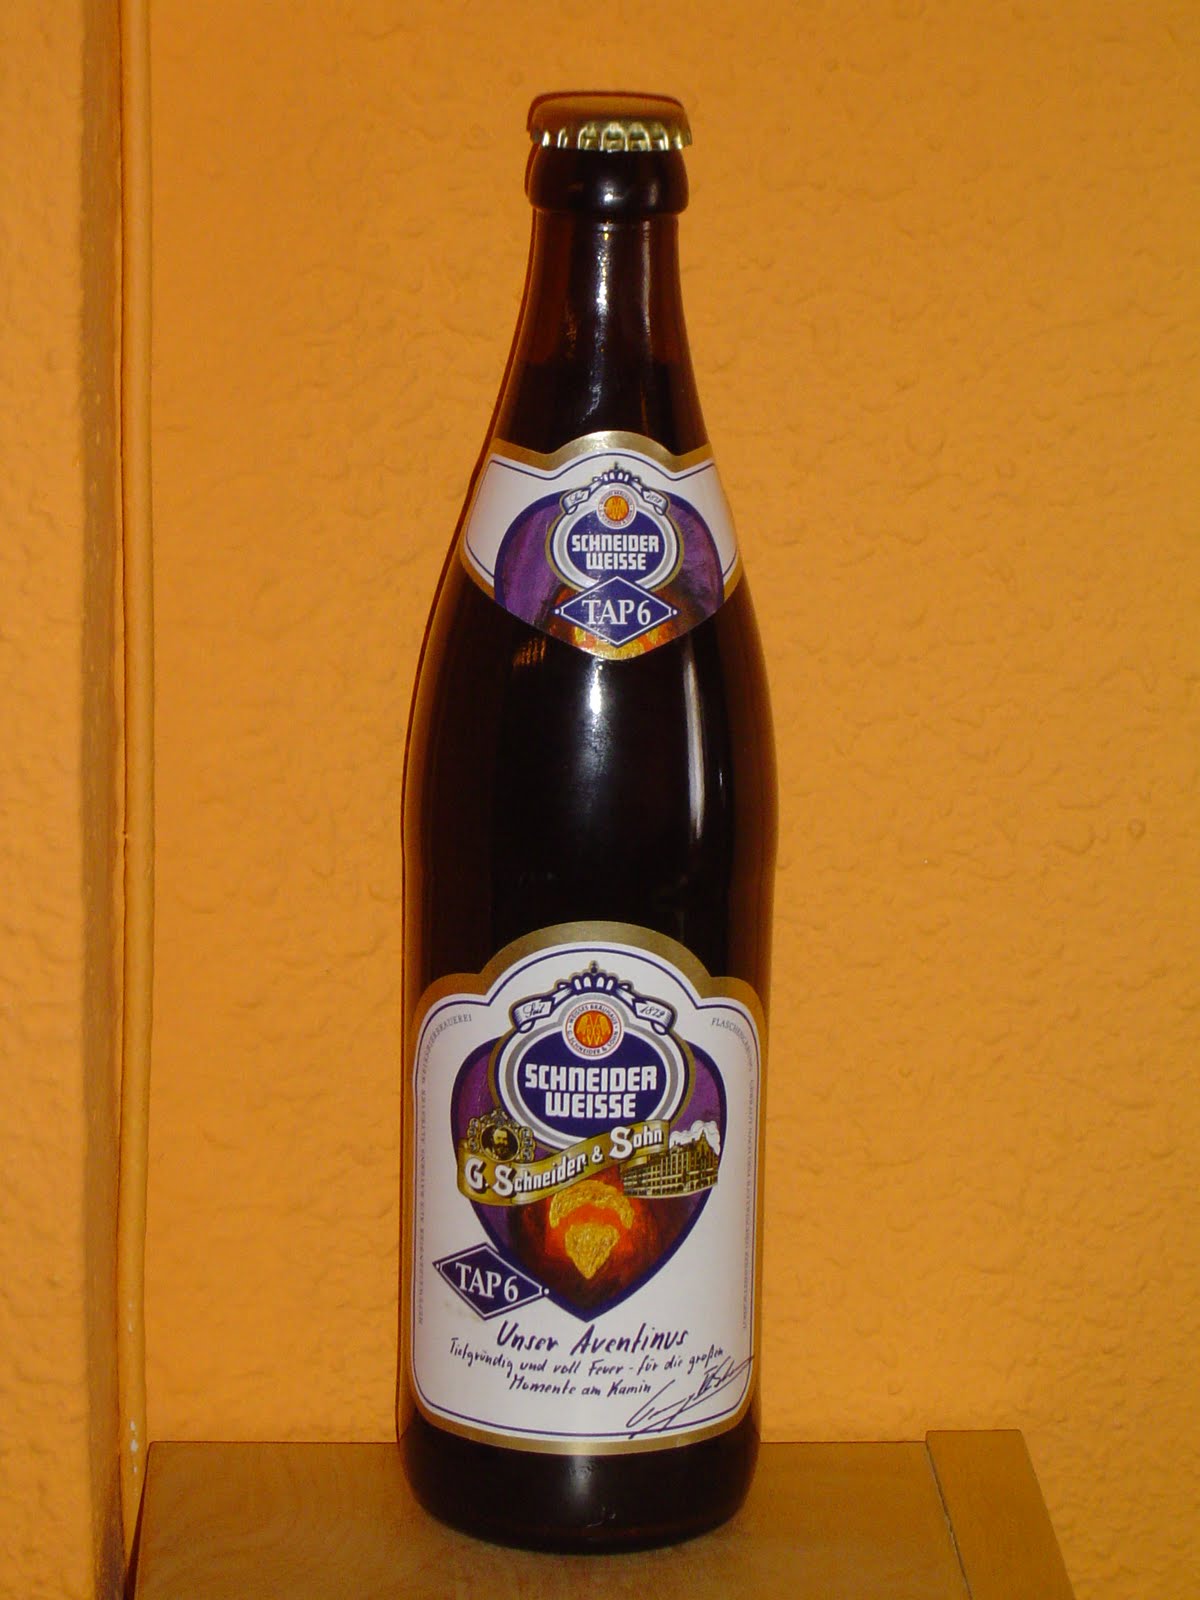 Coleccionando cervezas Schneider Weisse TAP 6 Unser Aventinus